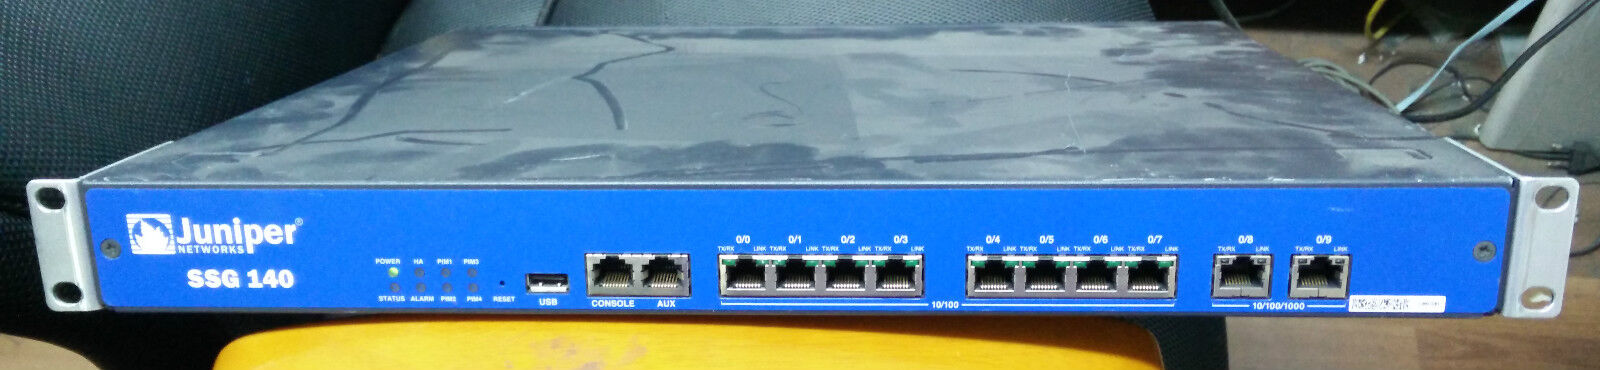 Juniper SSG-140 Firewall Security Service Gateway SSG-140-SH 